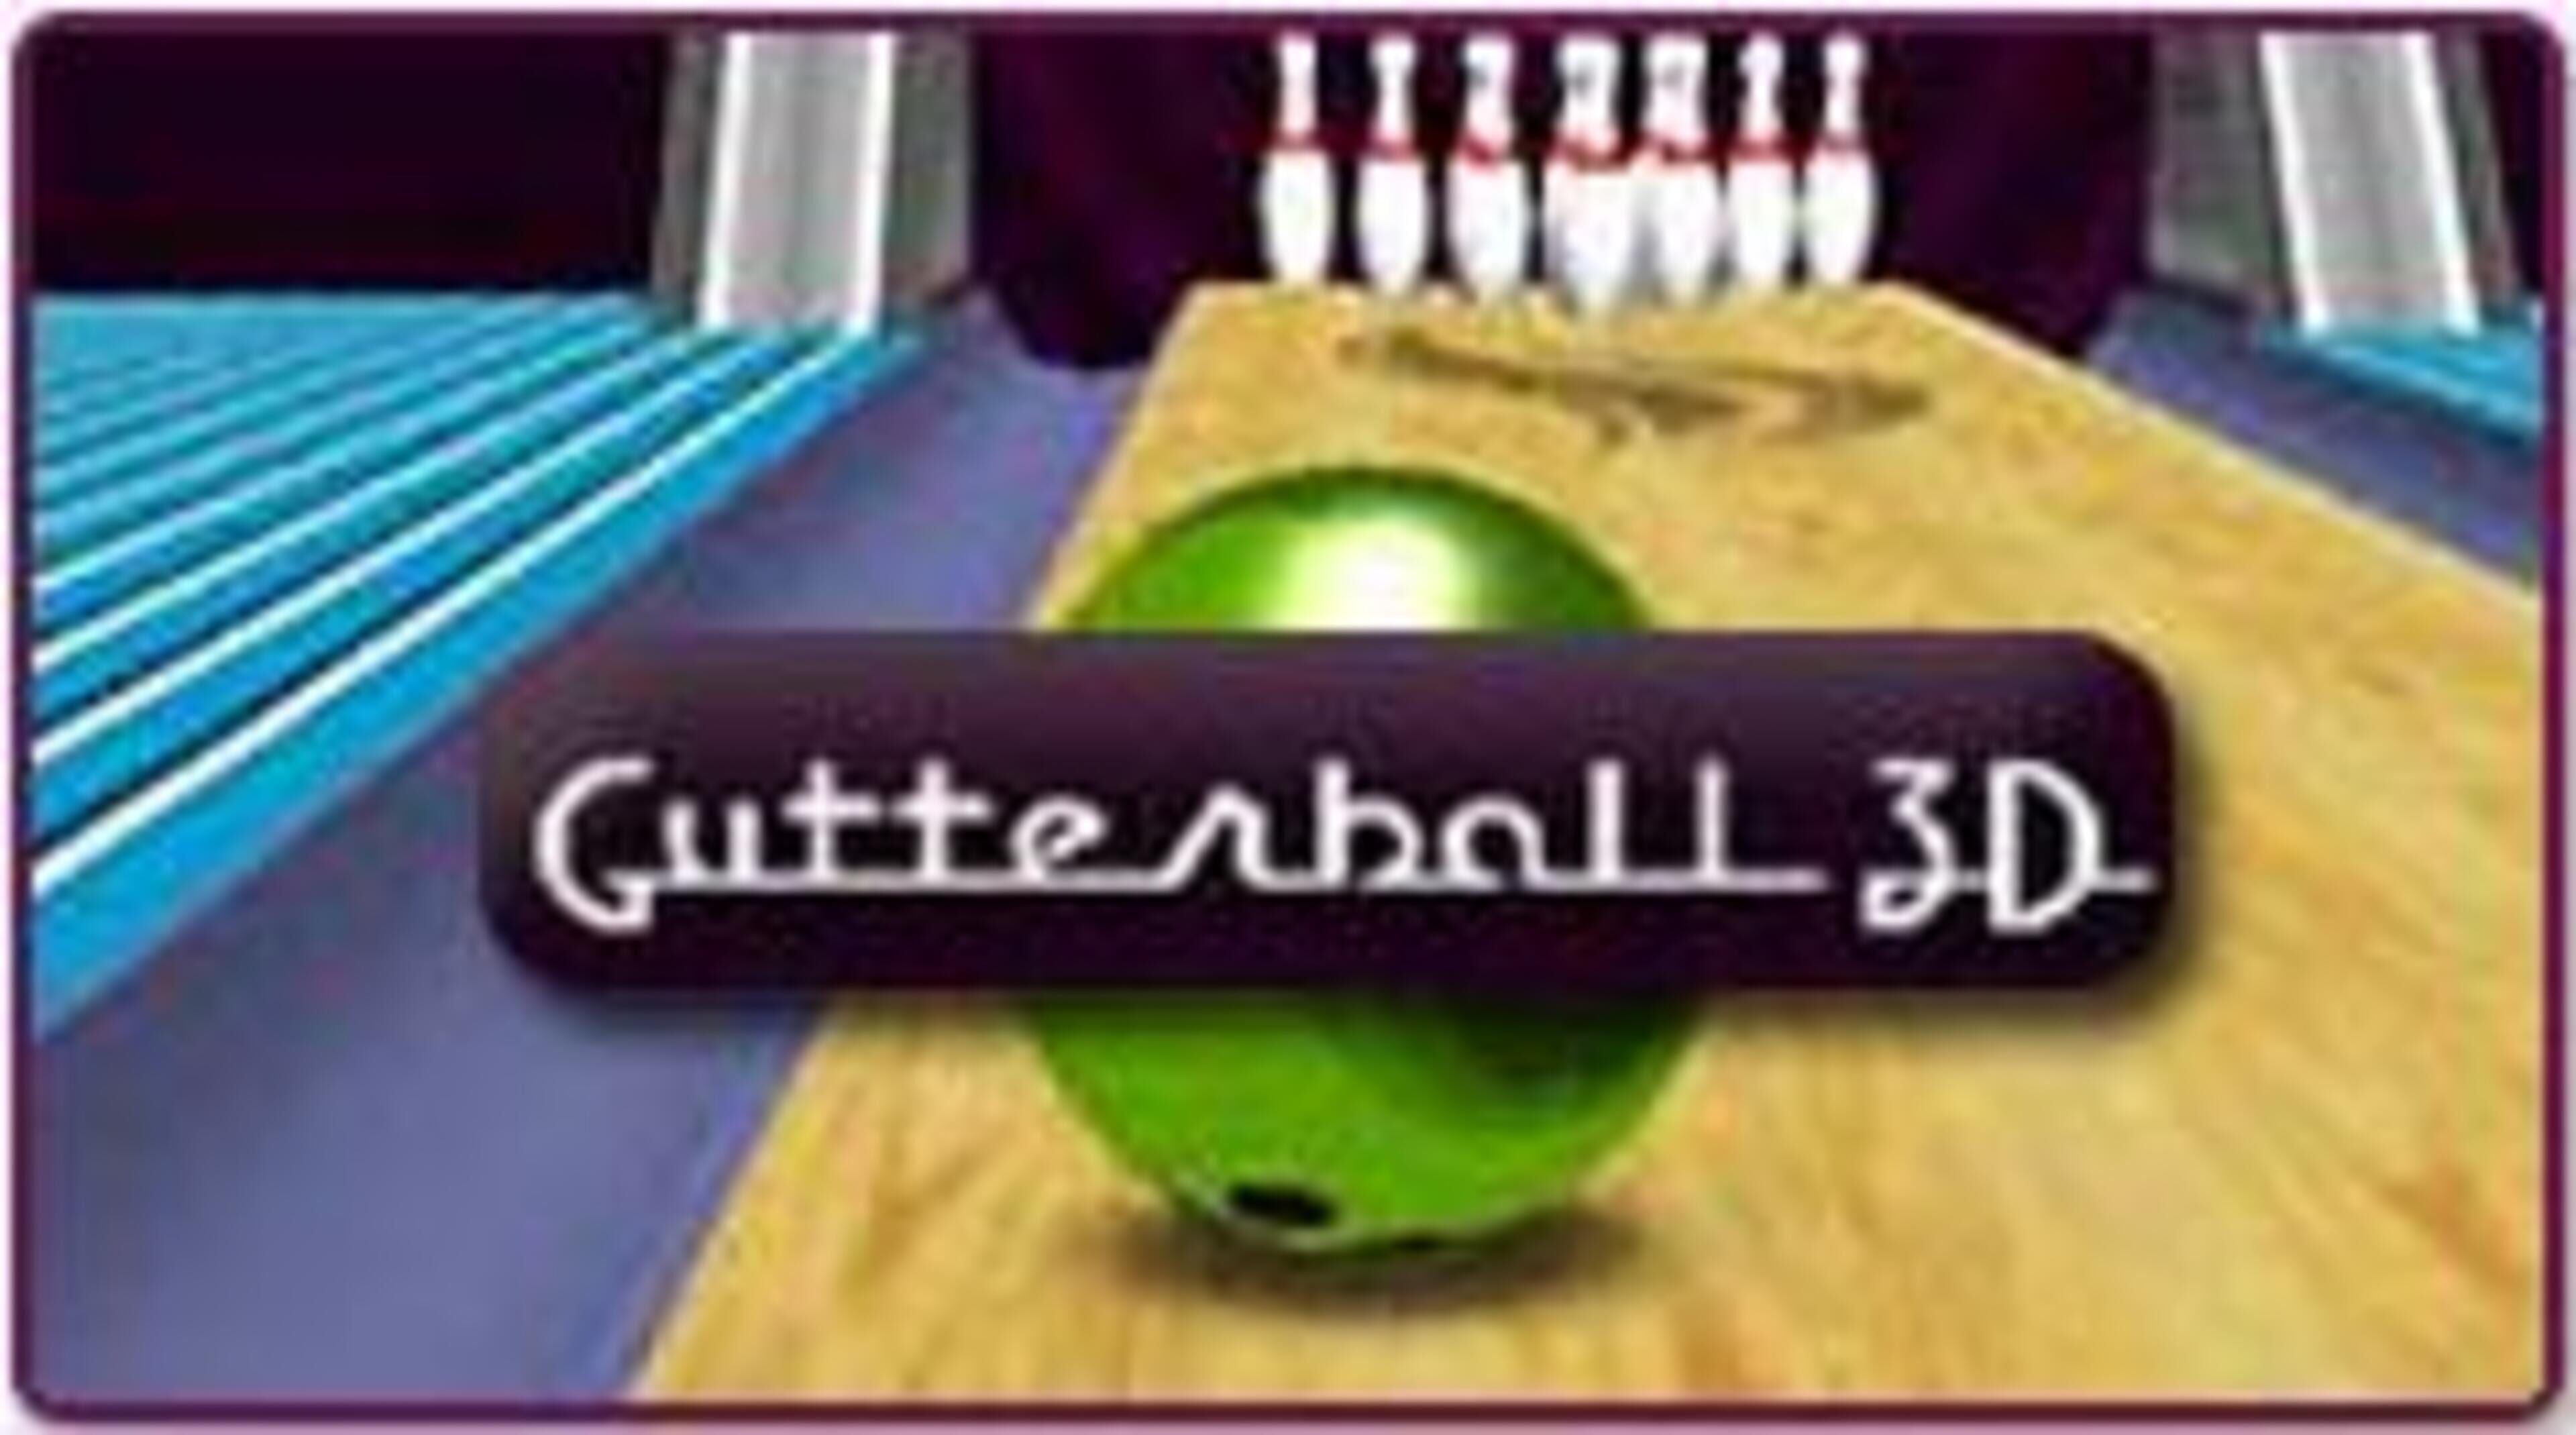 Gutterball News, Guides, Walkthrough, Screenshots, and Reviews